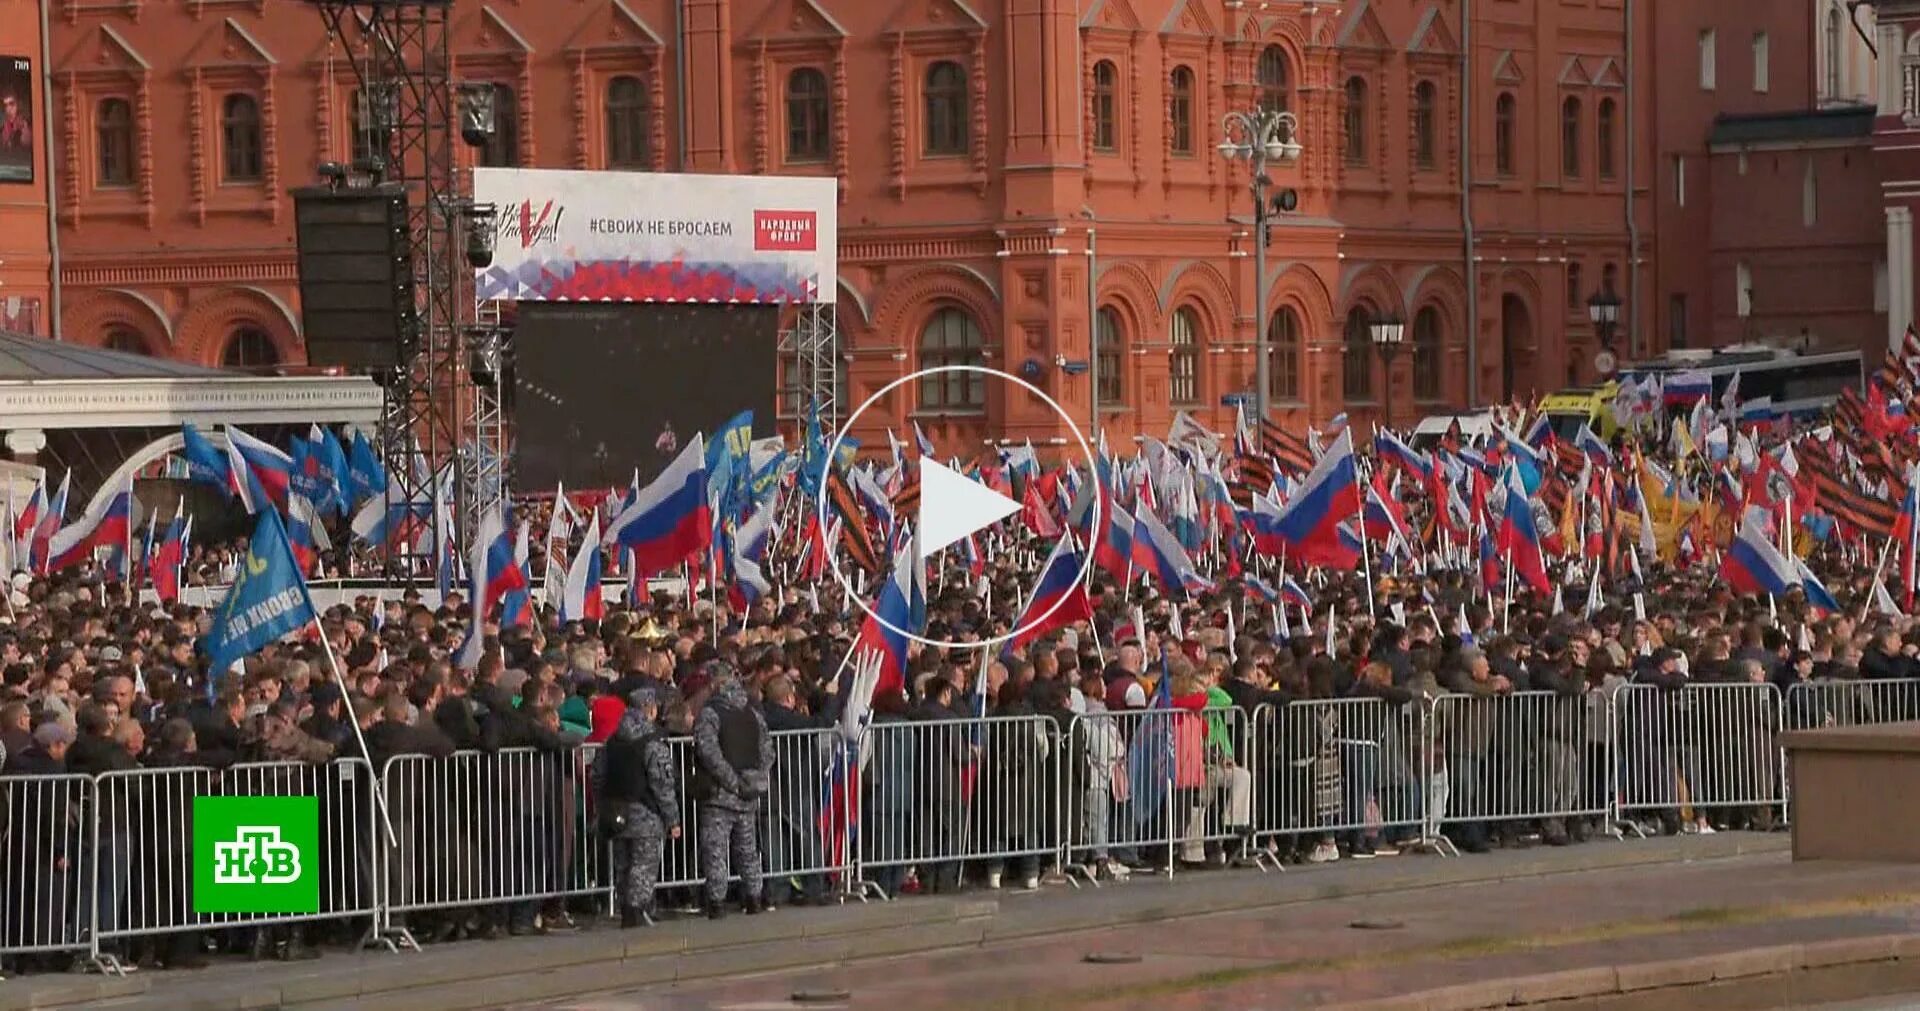 Митинг в поддержку России. Митинг в Москве в поддержку референдума. Россия человек. Митинг на Манежной площади. Проходят митинги в поддержку